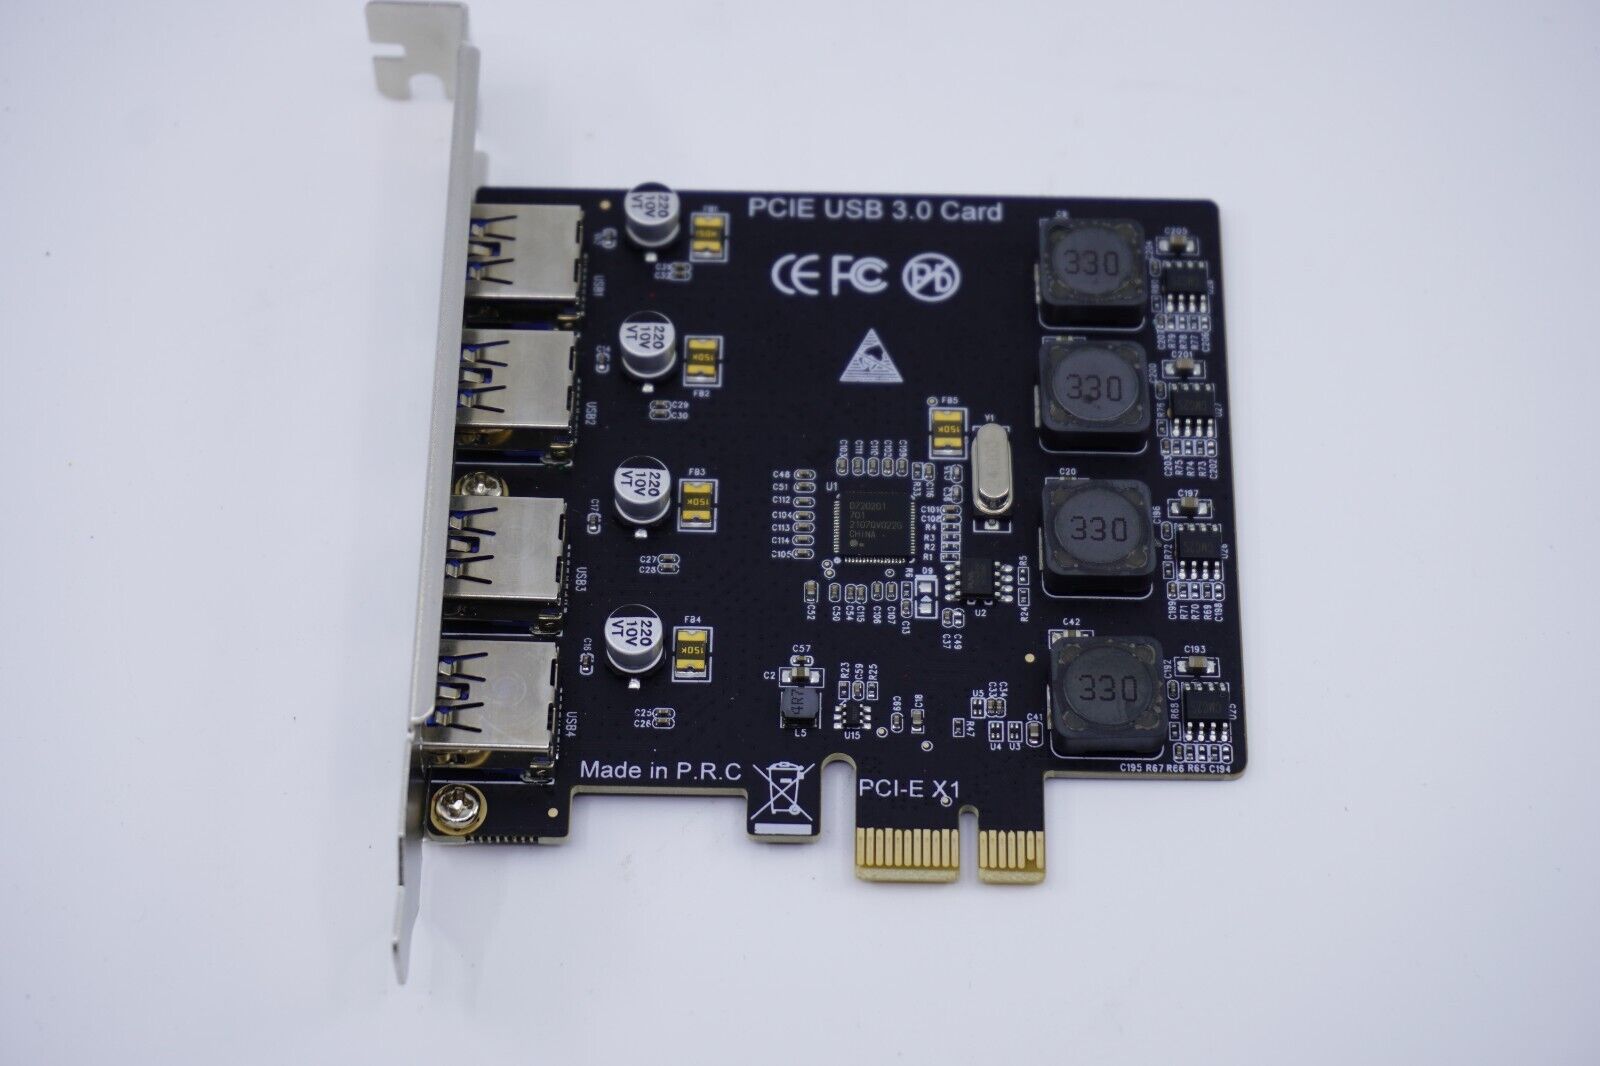 FebSmart PCI Express USB 3.0 Expansion Card FS-U4-Pro 4 Ports